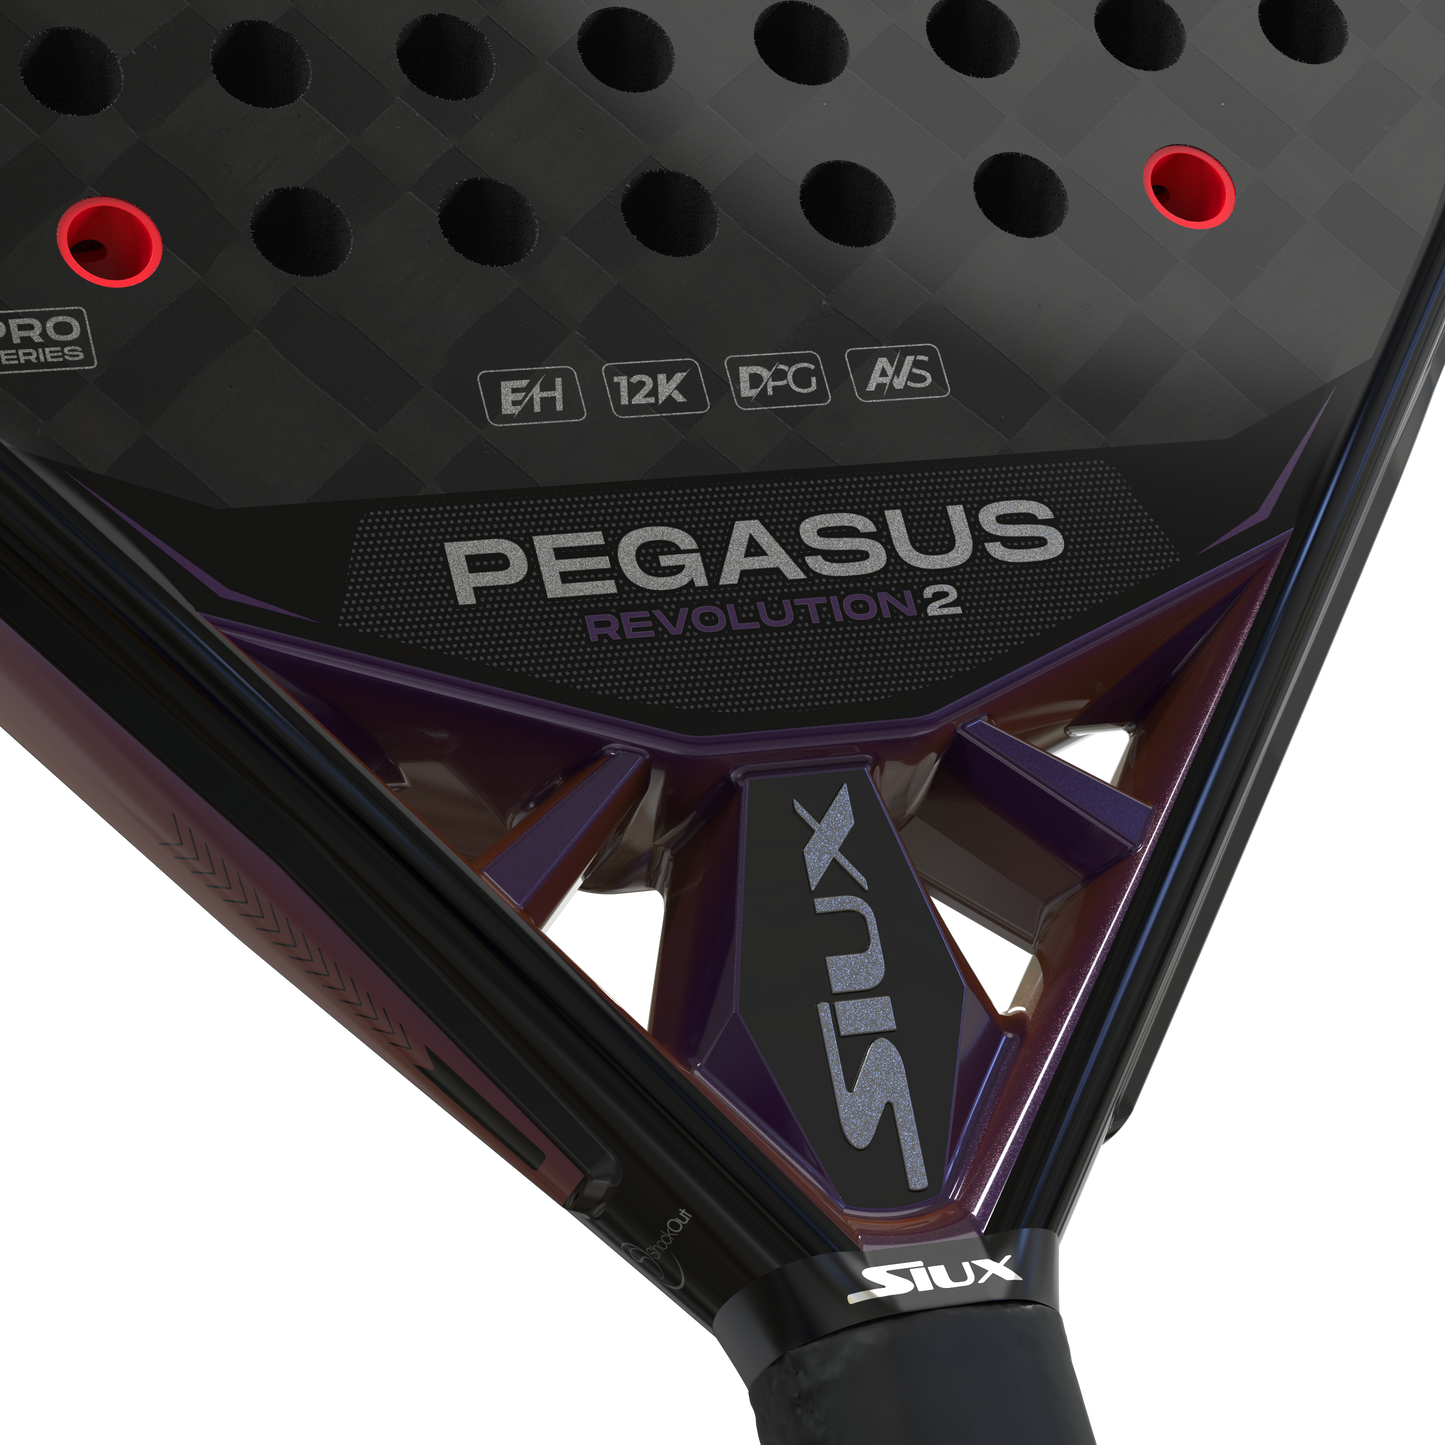 Pegasus Revolution 2